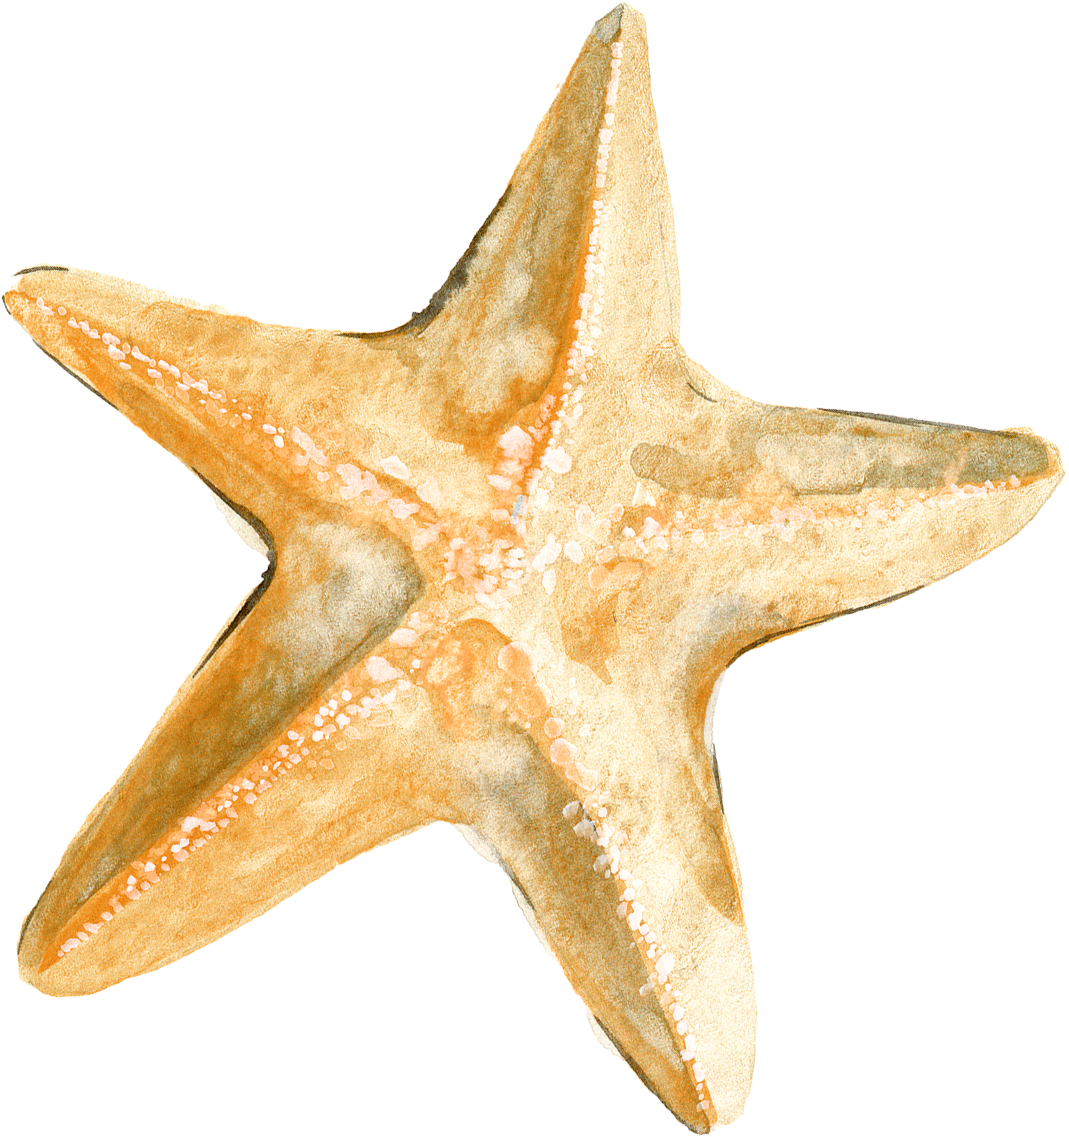 Starfish Download - Drawing Starfish - Starfish Download - Drawing Starfish (2400x2400)